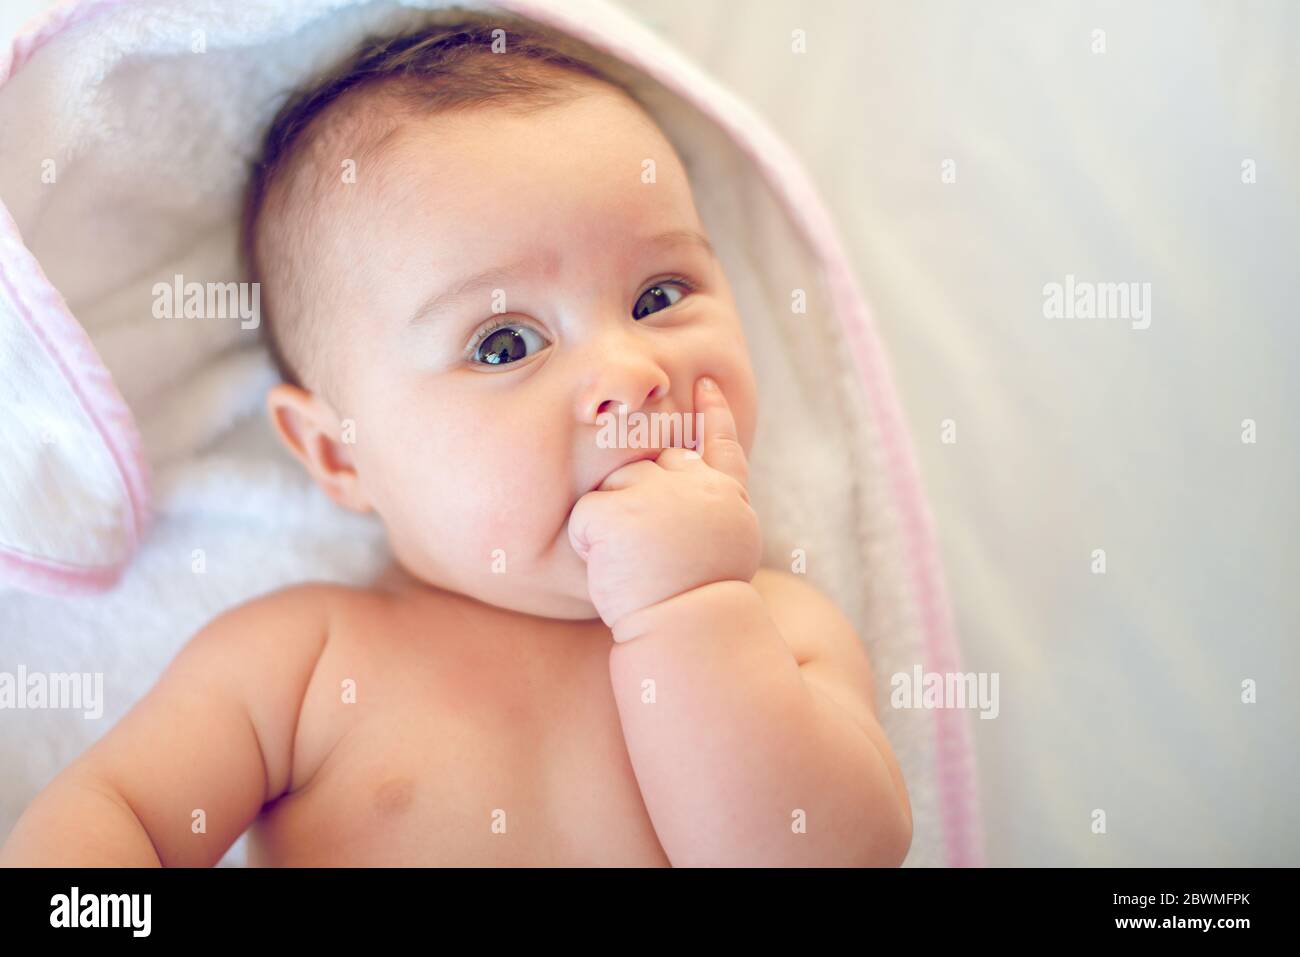 Porträt eines kleinen neugeborenen Mädchens, das ihren Finger im Mund hat Stockfoto